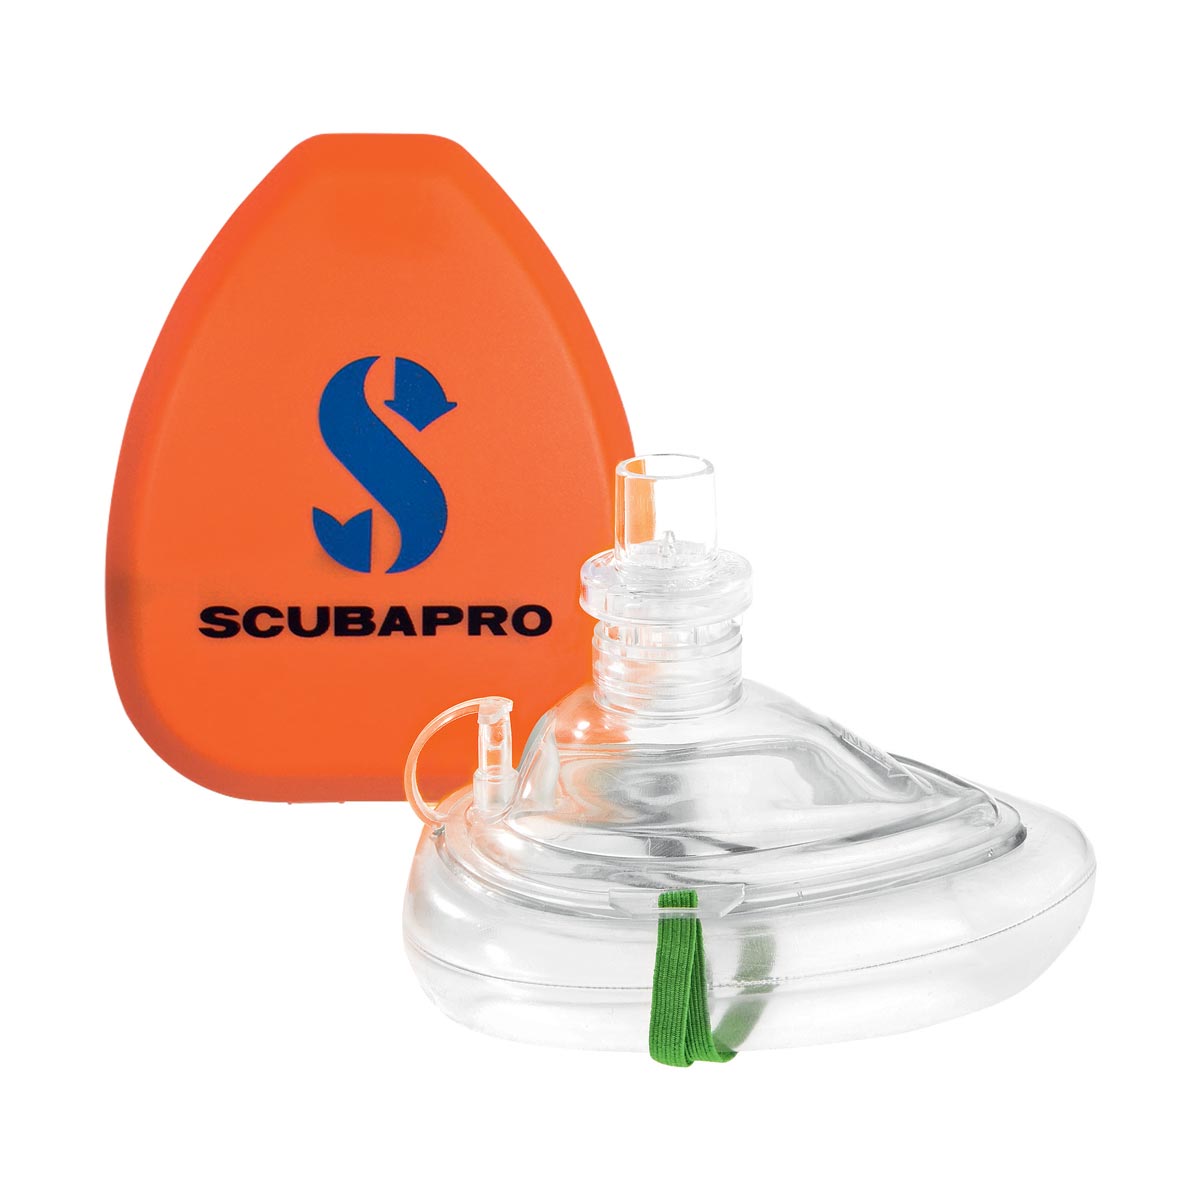 SCUBAPRO - Pocket Mask, Notfall Beatmungsmaske im Etui